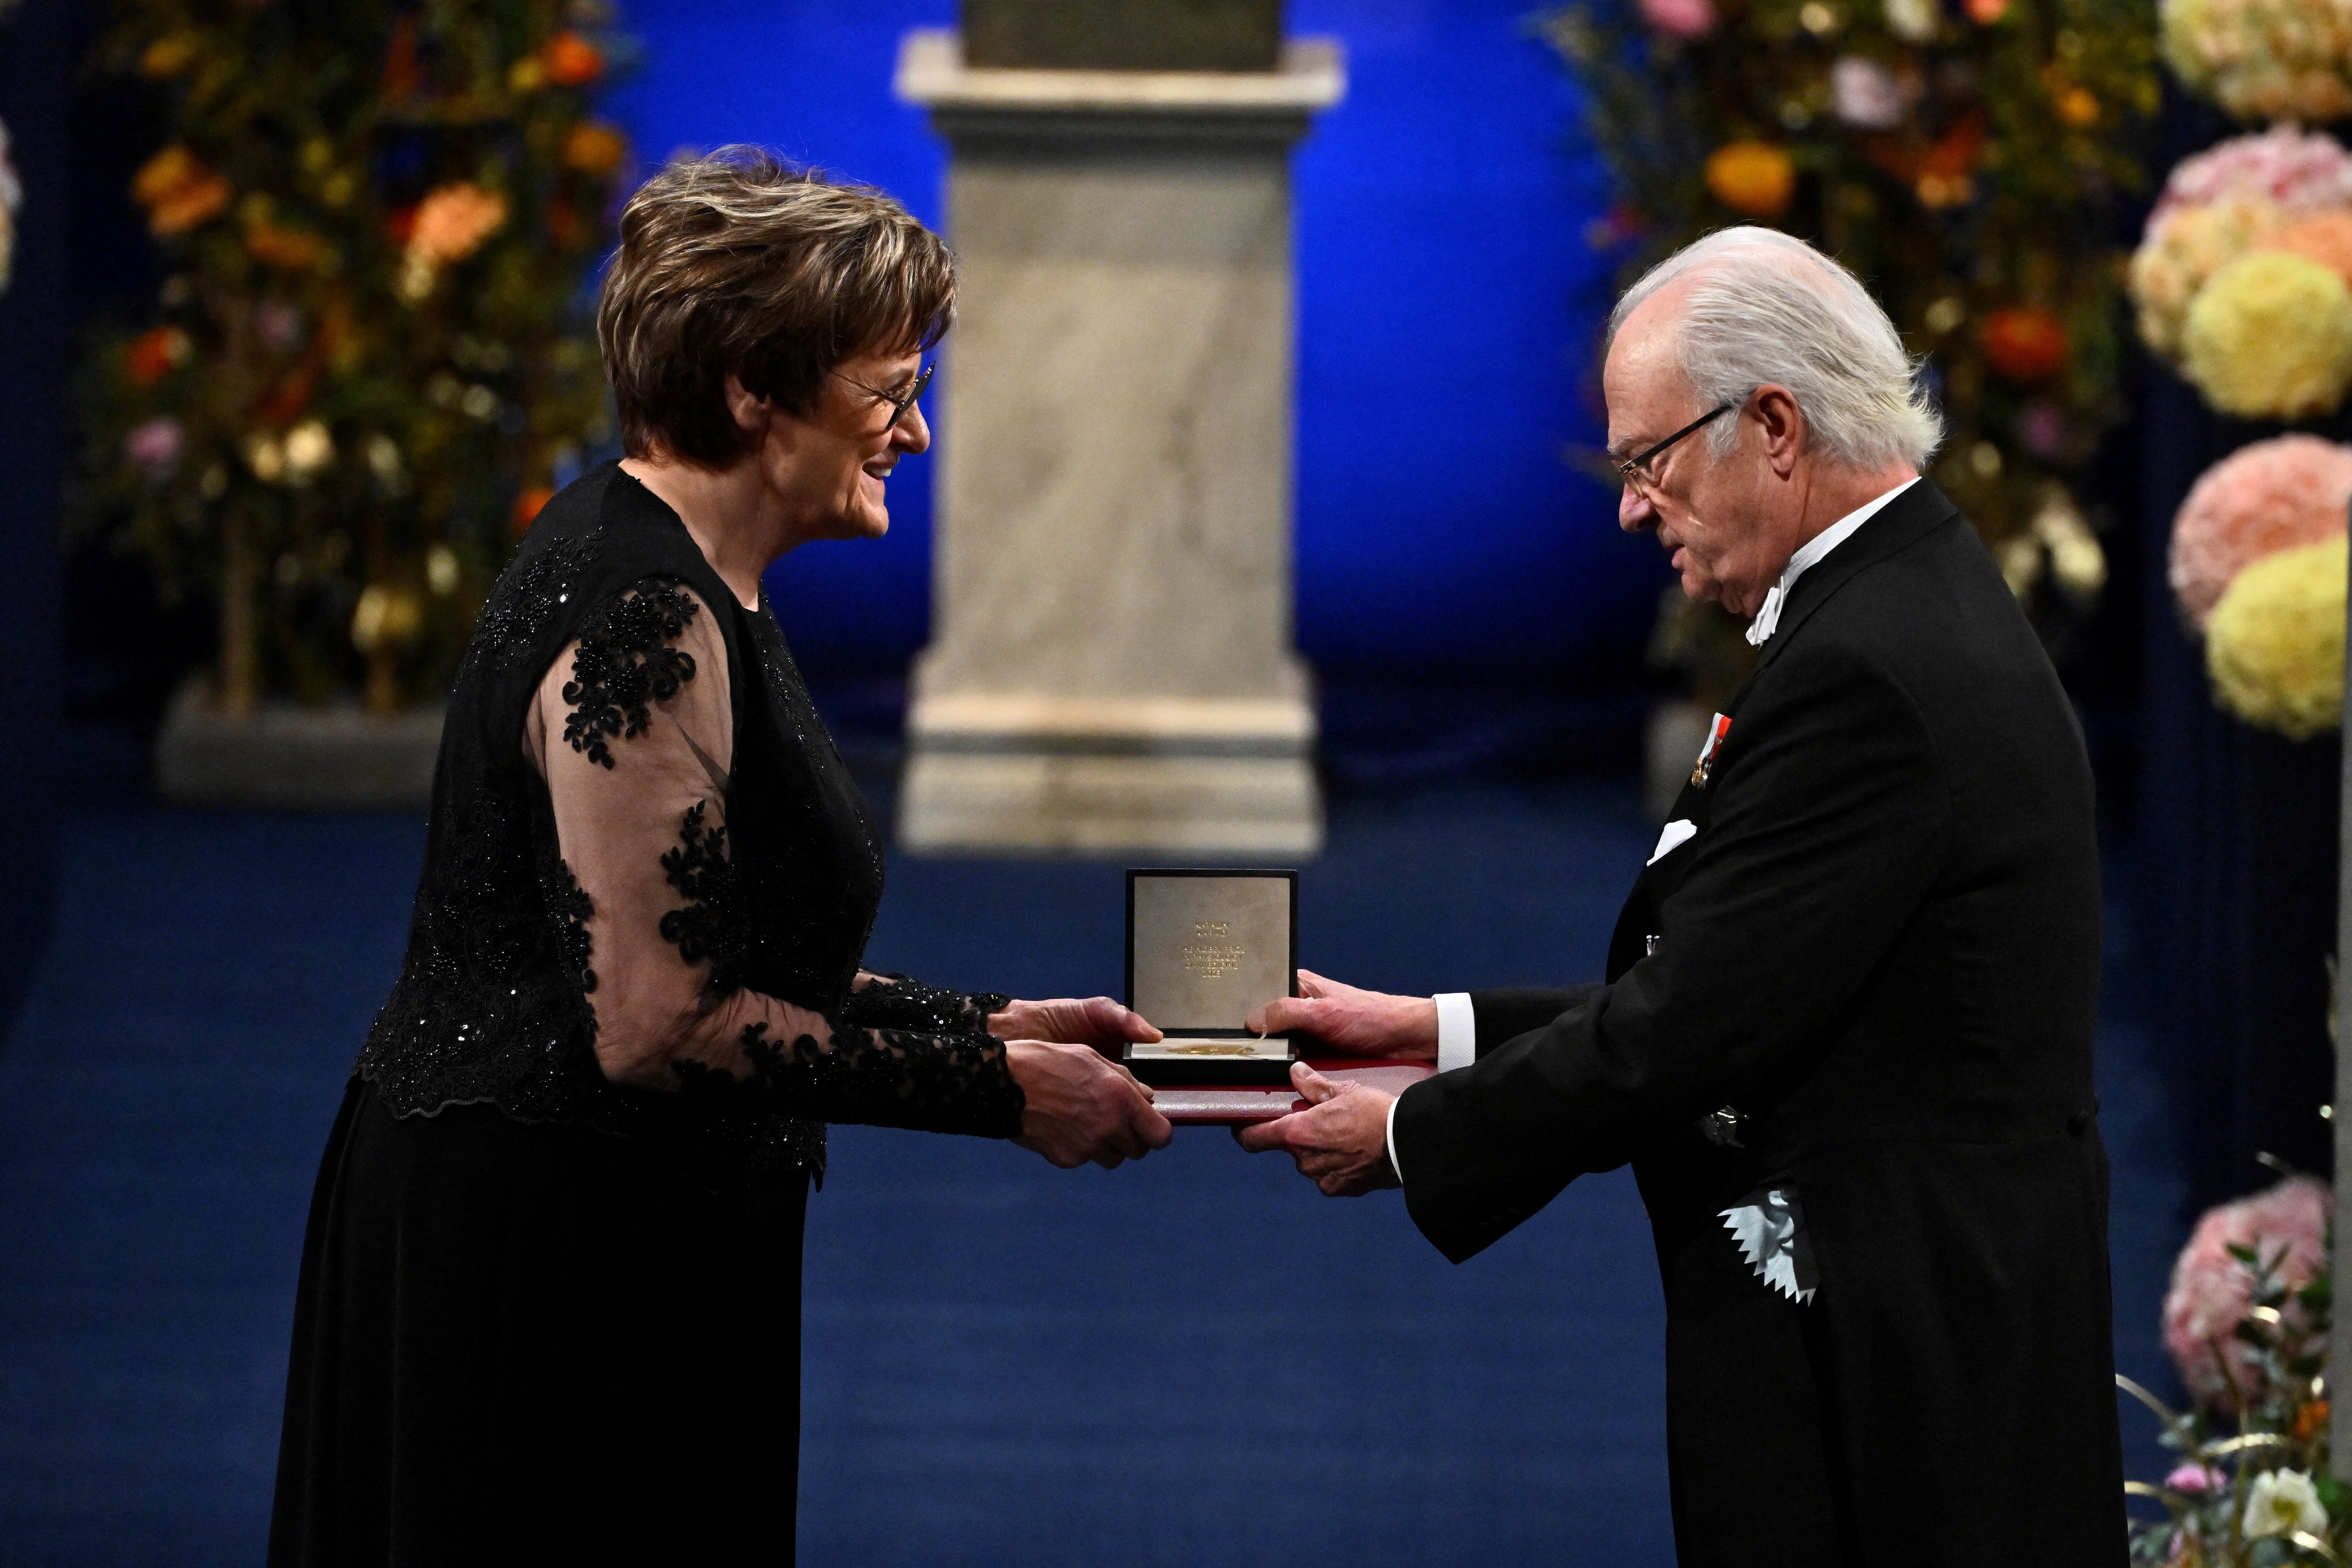 Katalin Karikó recibe el Premio Nobel de Fisiología o Medicina 2023 de manos del rey Carlos Gustavo de Suecia durante la ceremonia de entrega del Premio Nobel en la Sala de Conciertos de Estocolmo, Suecia, el 10 de diciembre de 2023 (Claudio Bresciani/TT News Agency/via REUTERS)